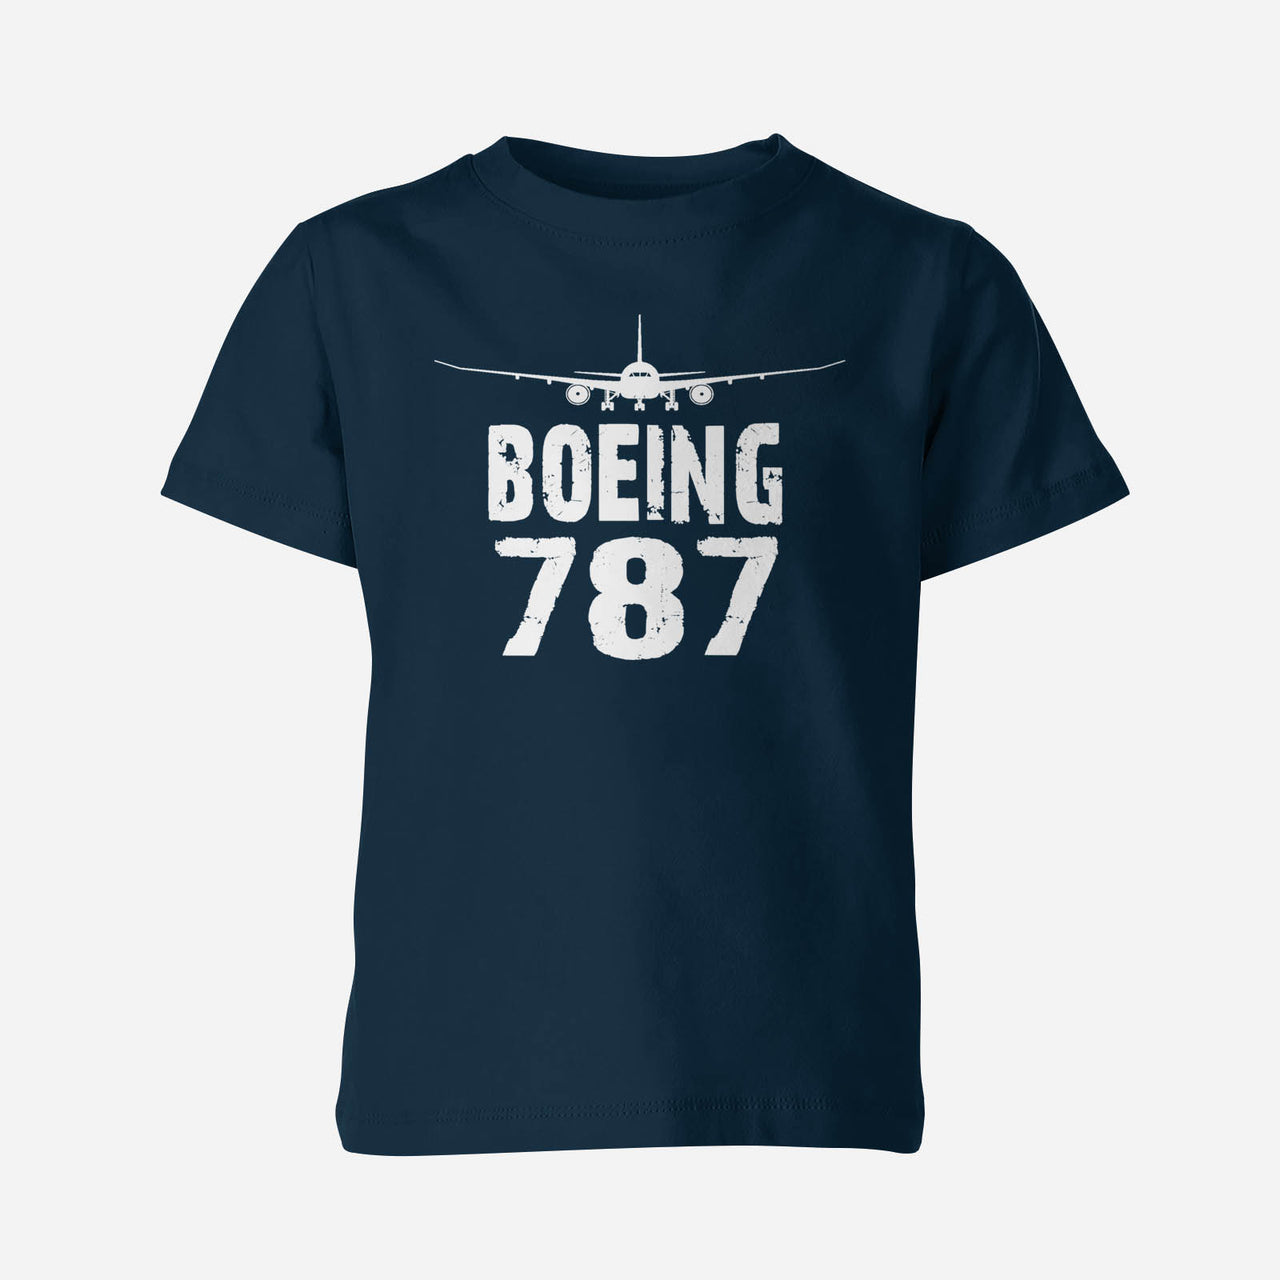 Boeing 787 & Plane Designed Children T-Shirts